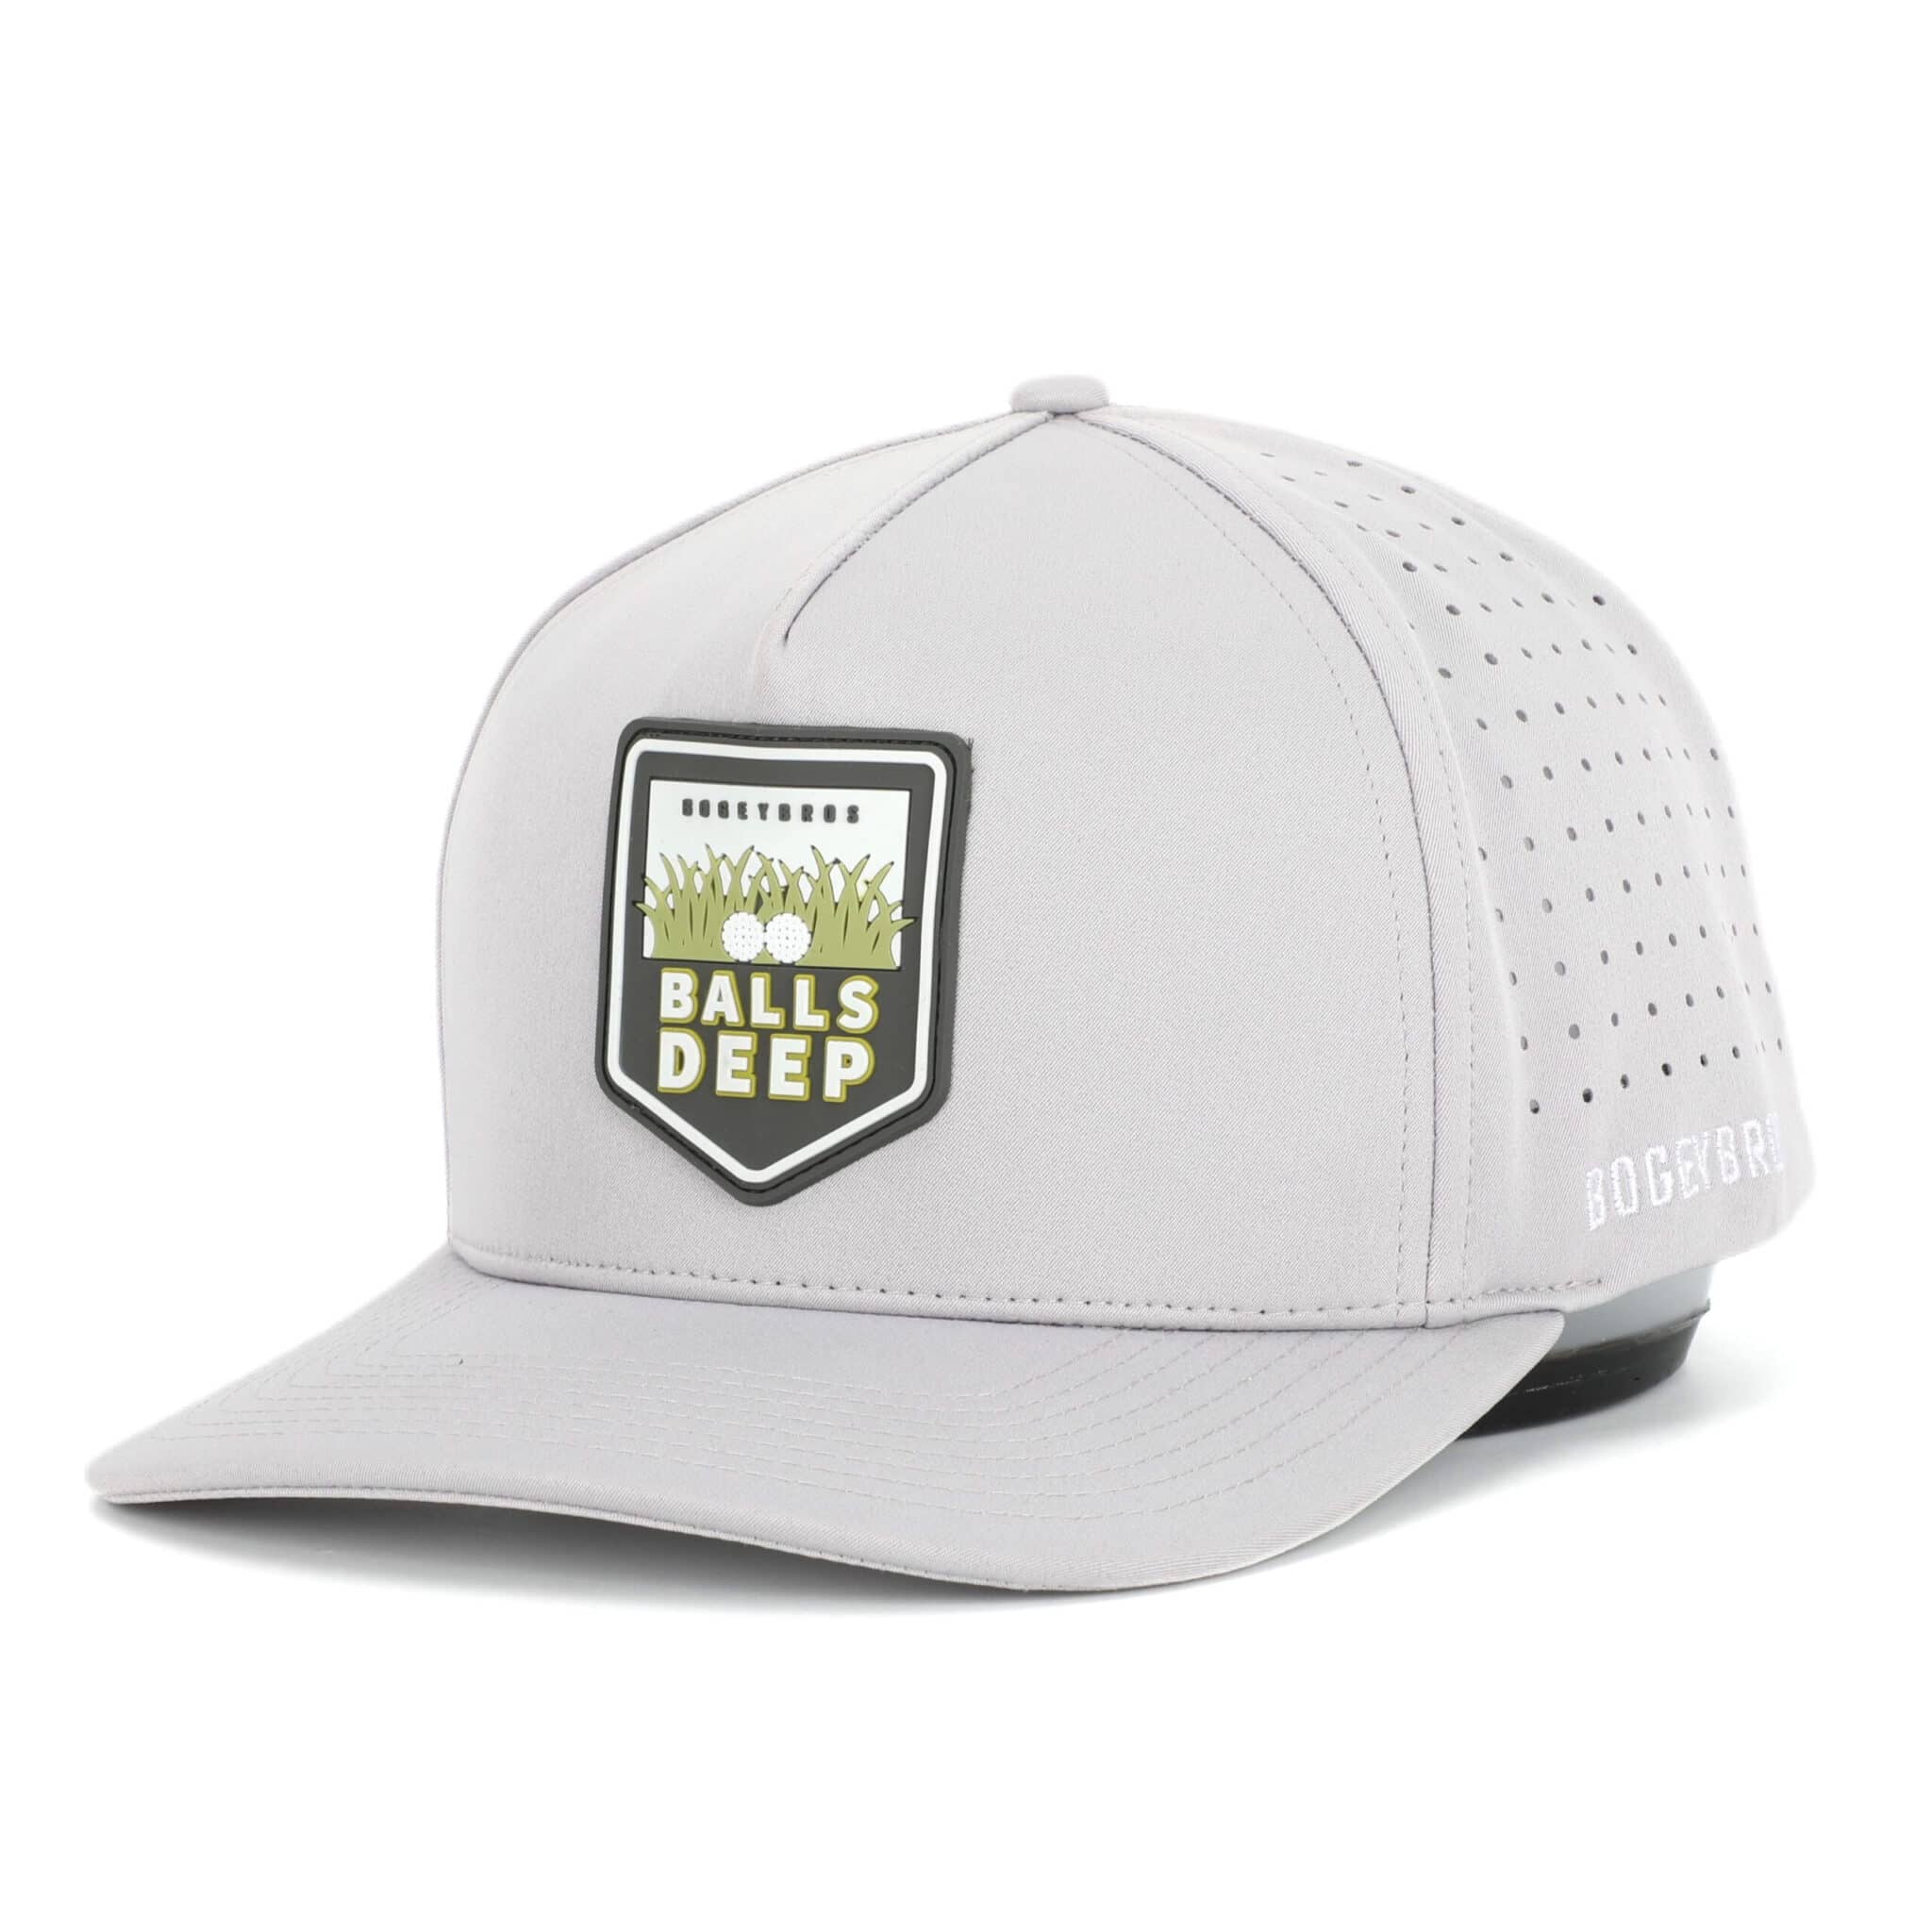 Funny Golf Caps & Hats, Unique Designs